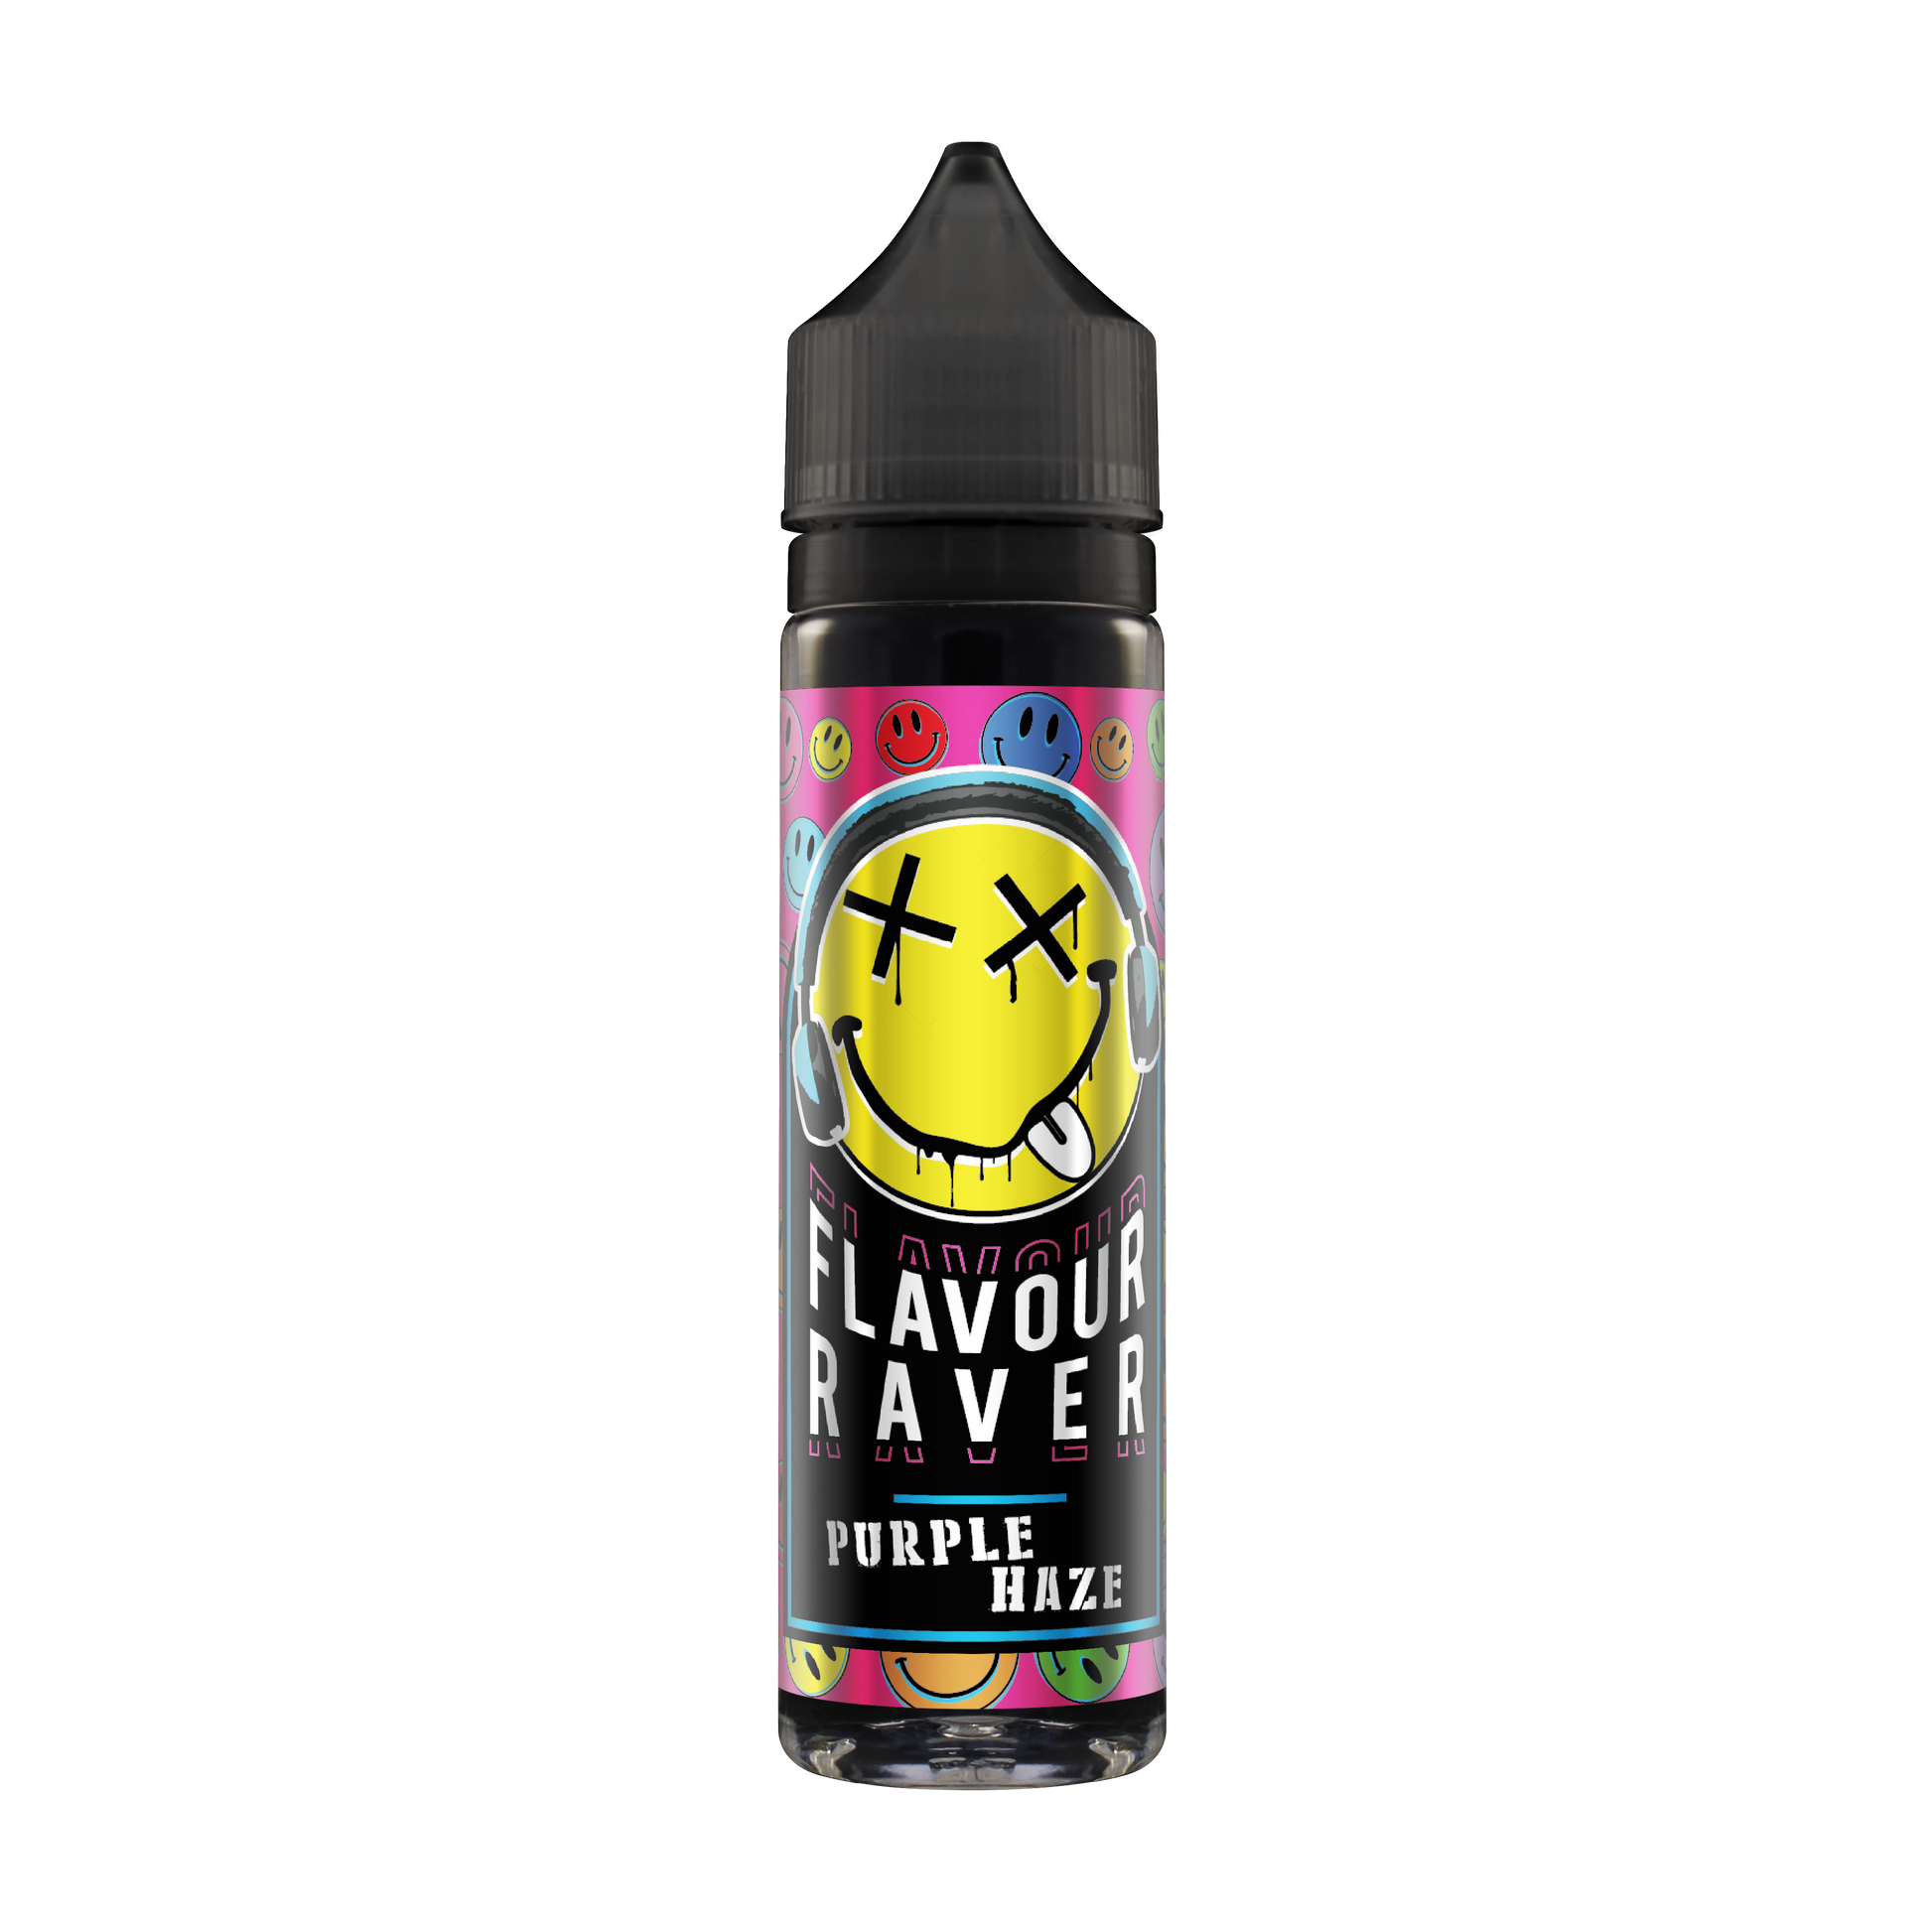 Flavour Raver Purple Haze 50ml Shortfill - The Ace Of Vapez